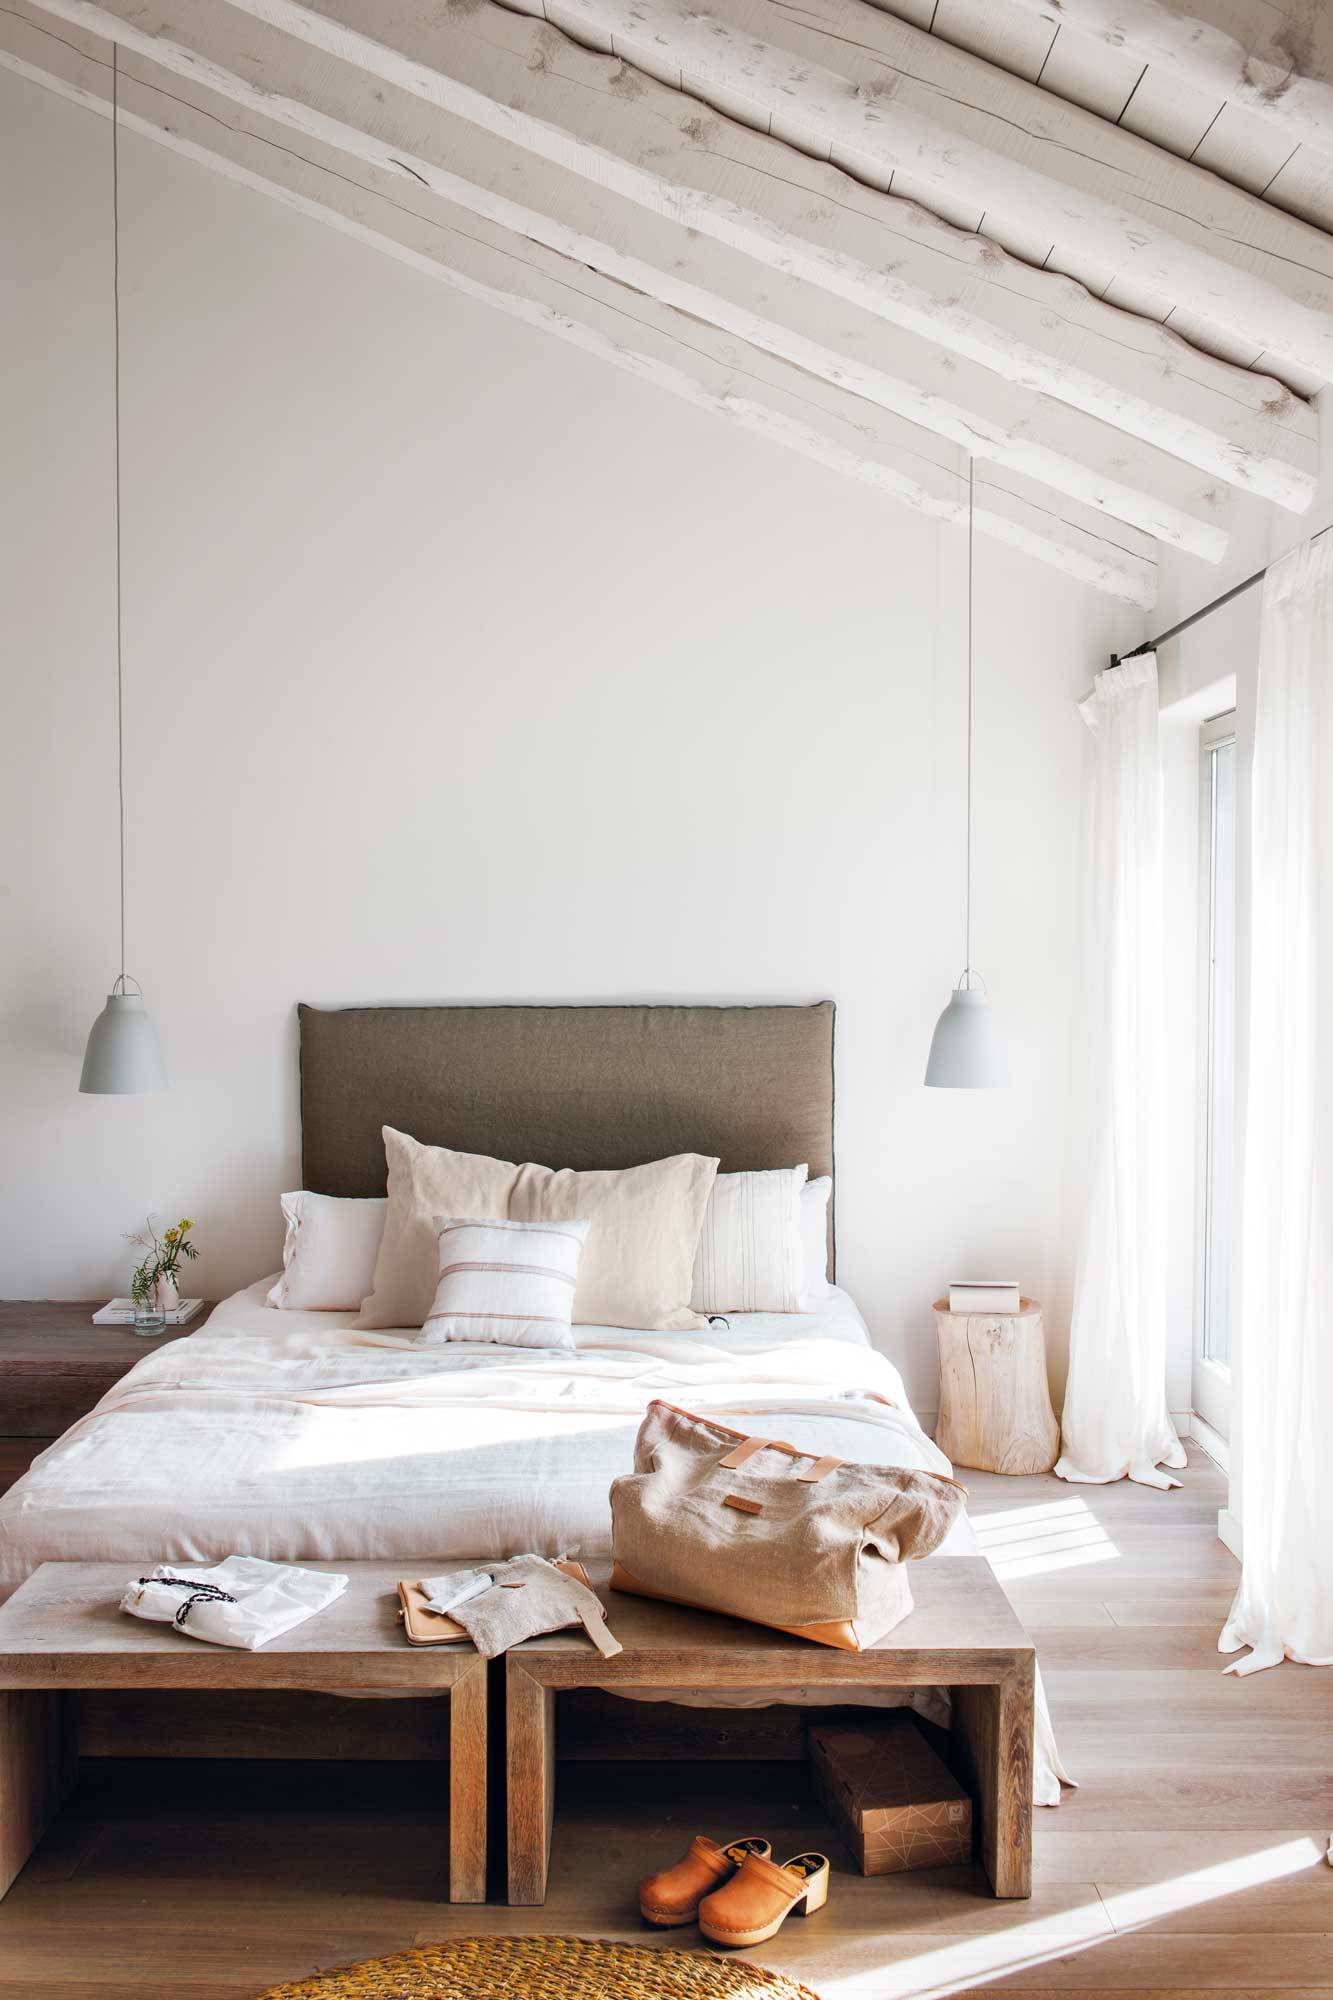 Dormitorio moderno de estilo minimalista con cabecero de lino. 